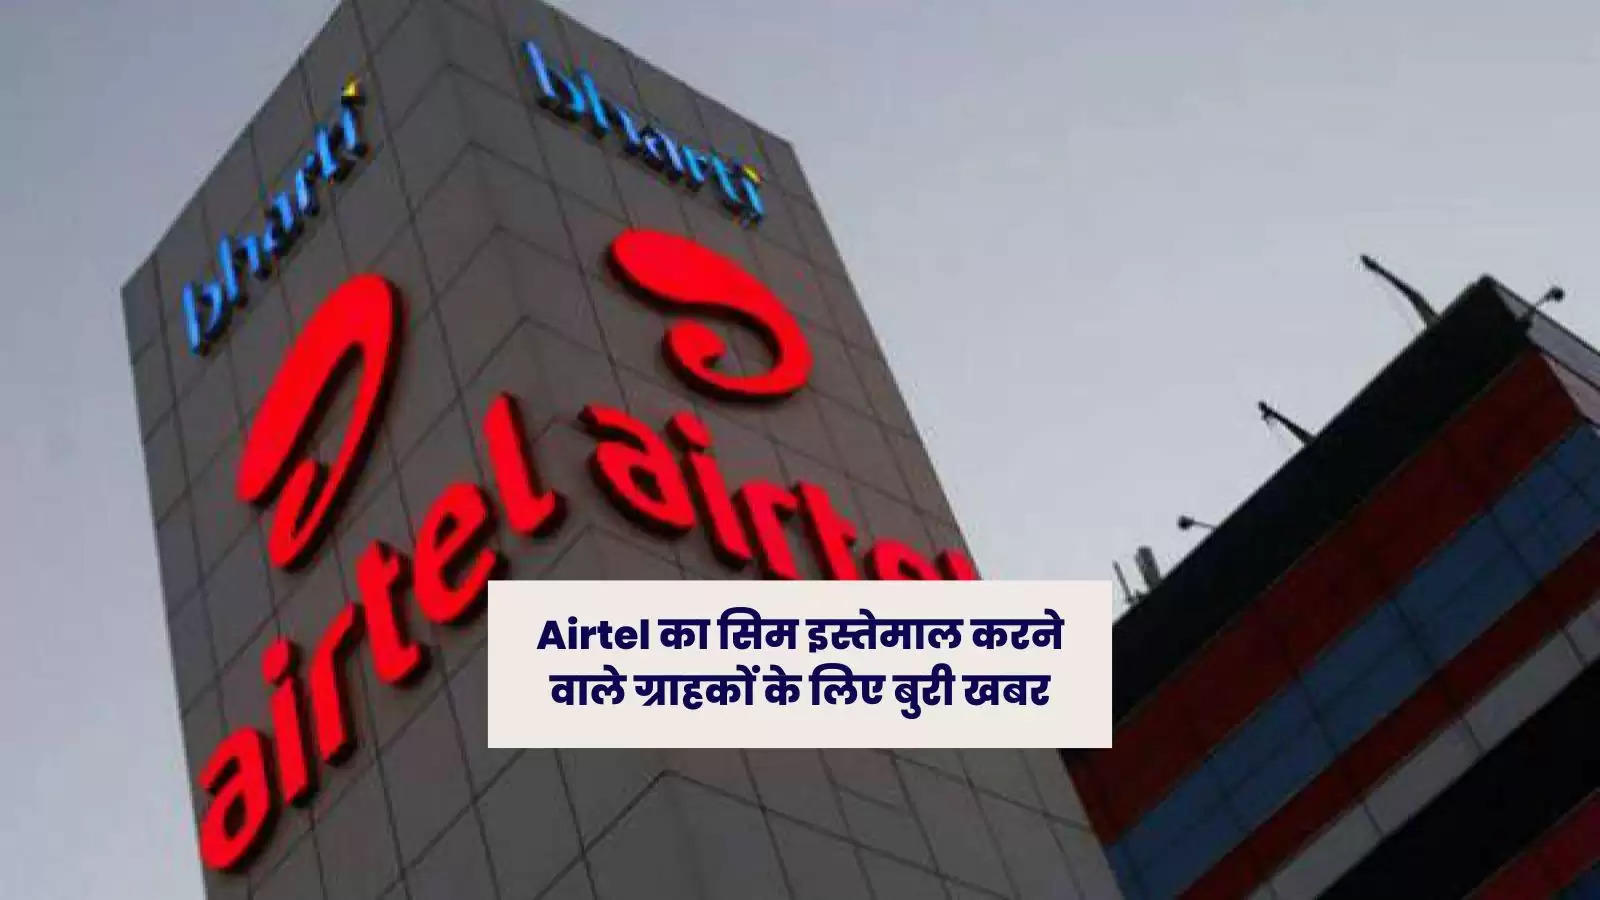 Airtel का सिम इस्तेमाल करने वाले ग्राहकों के लिए बुरी खबर